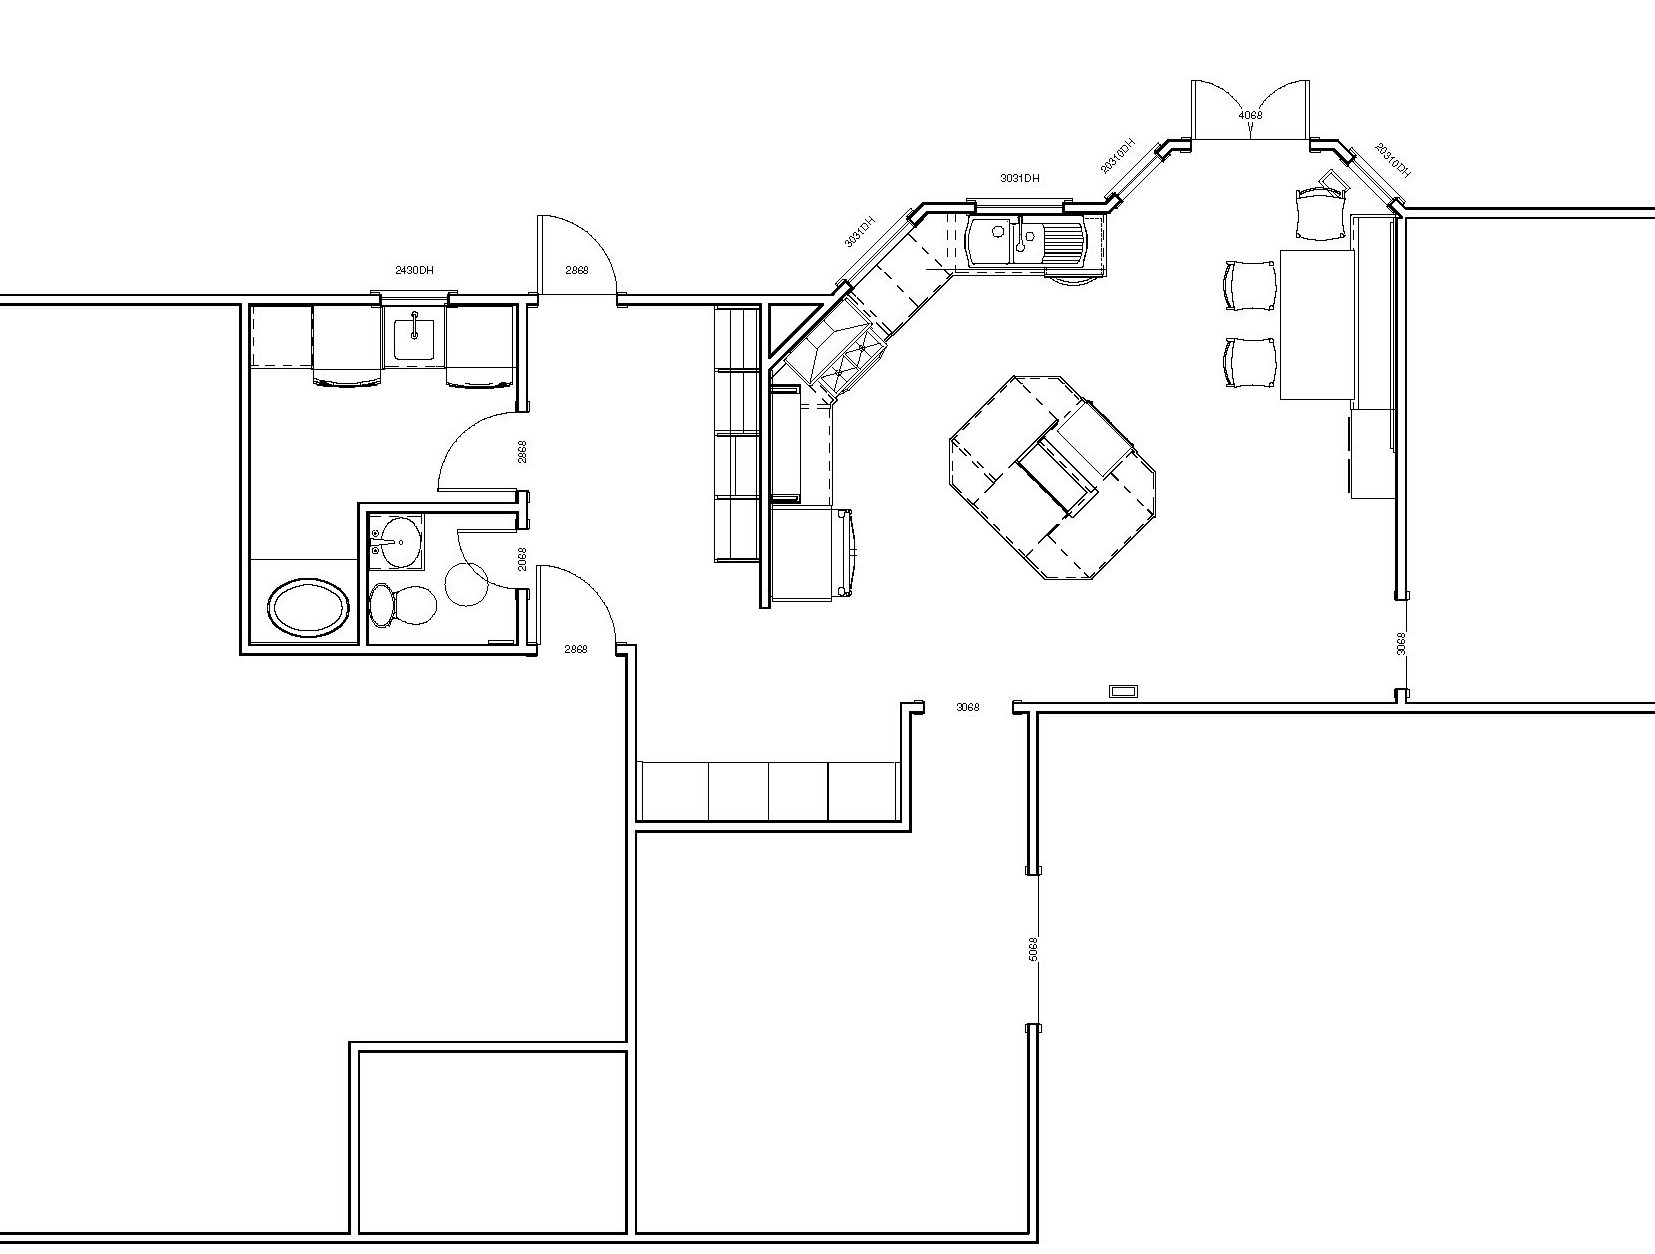 New floor plan